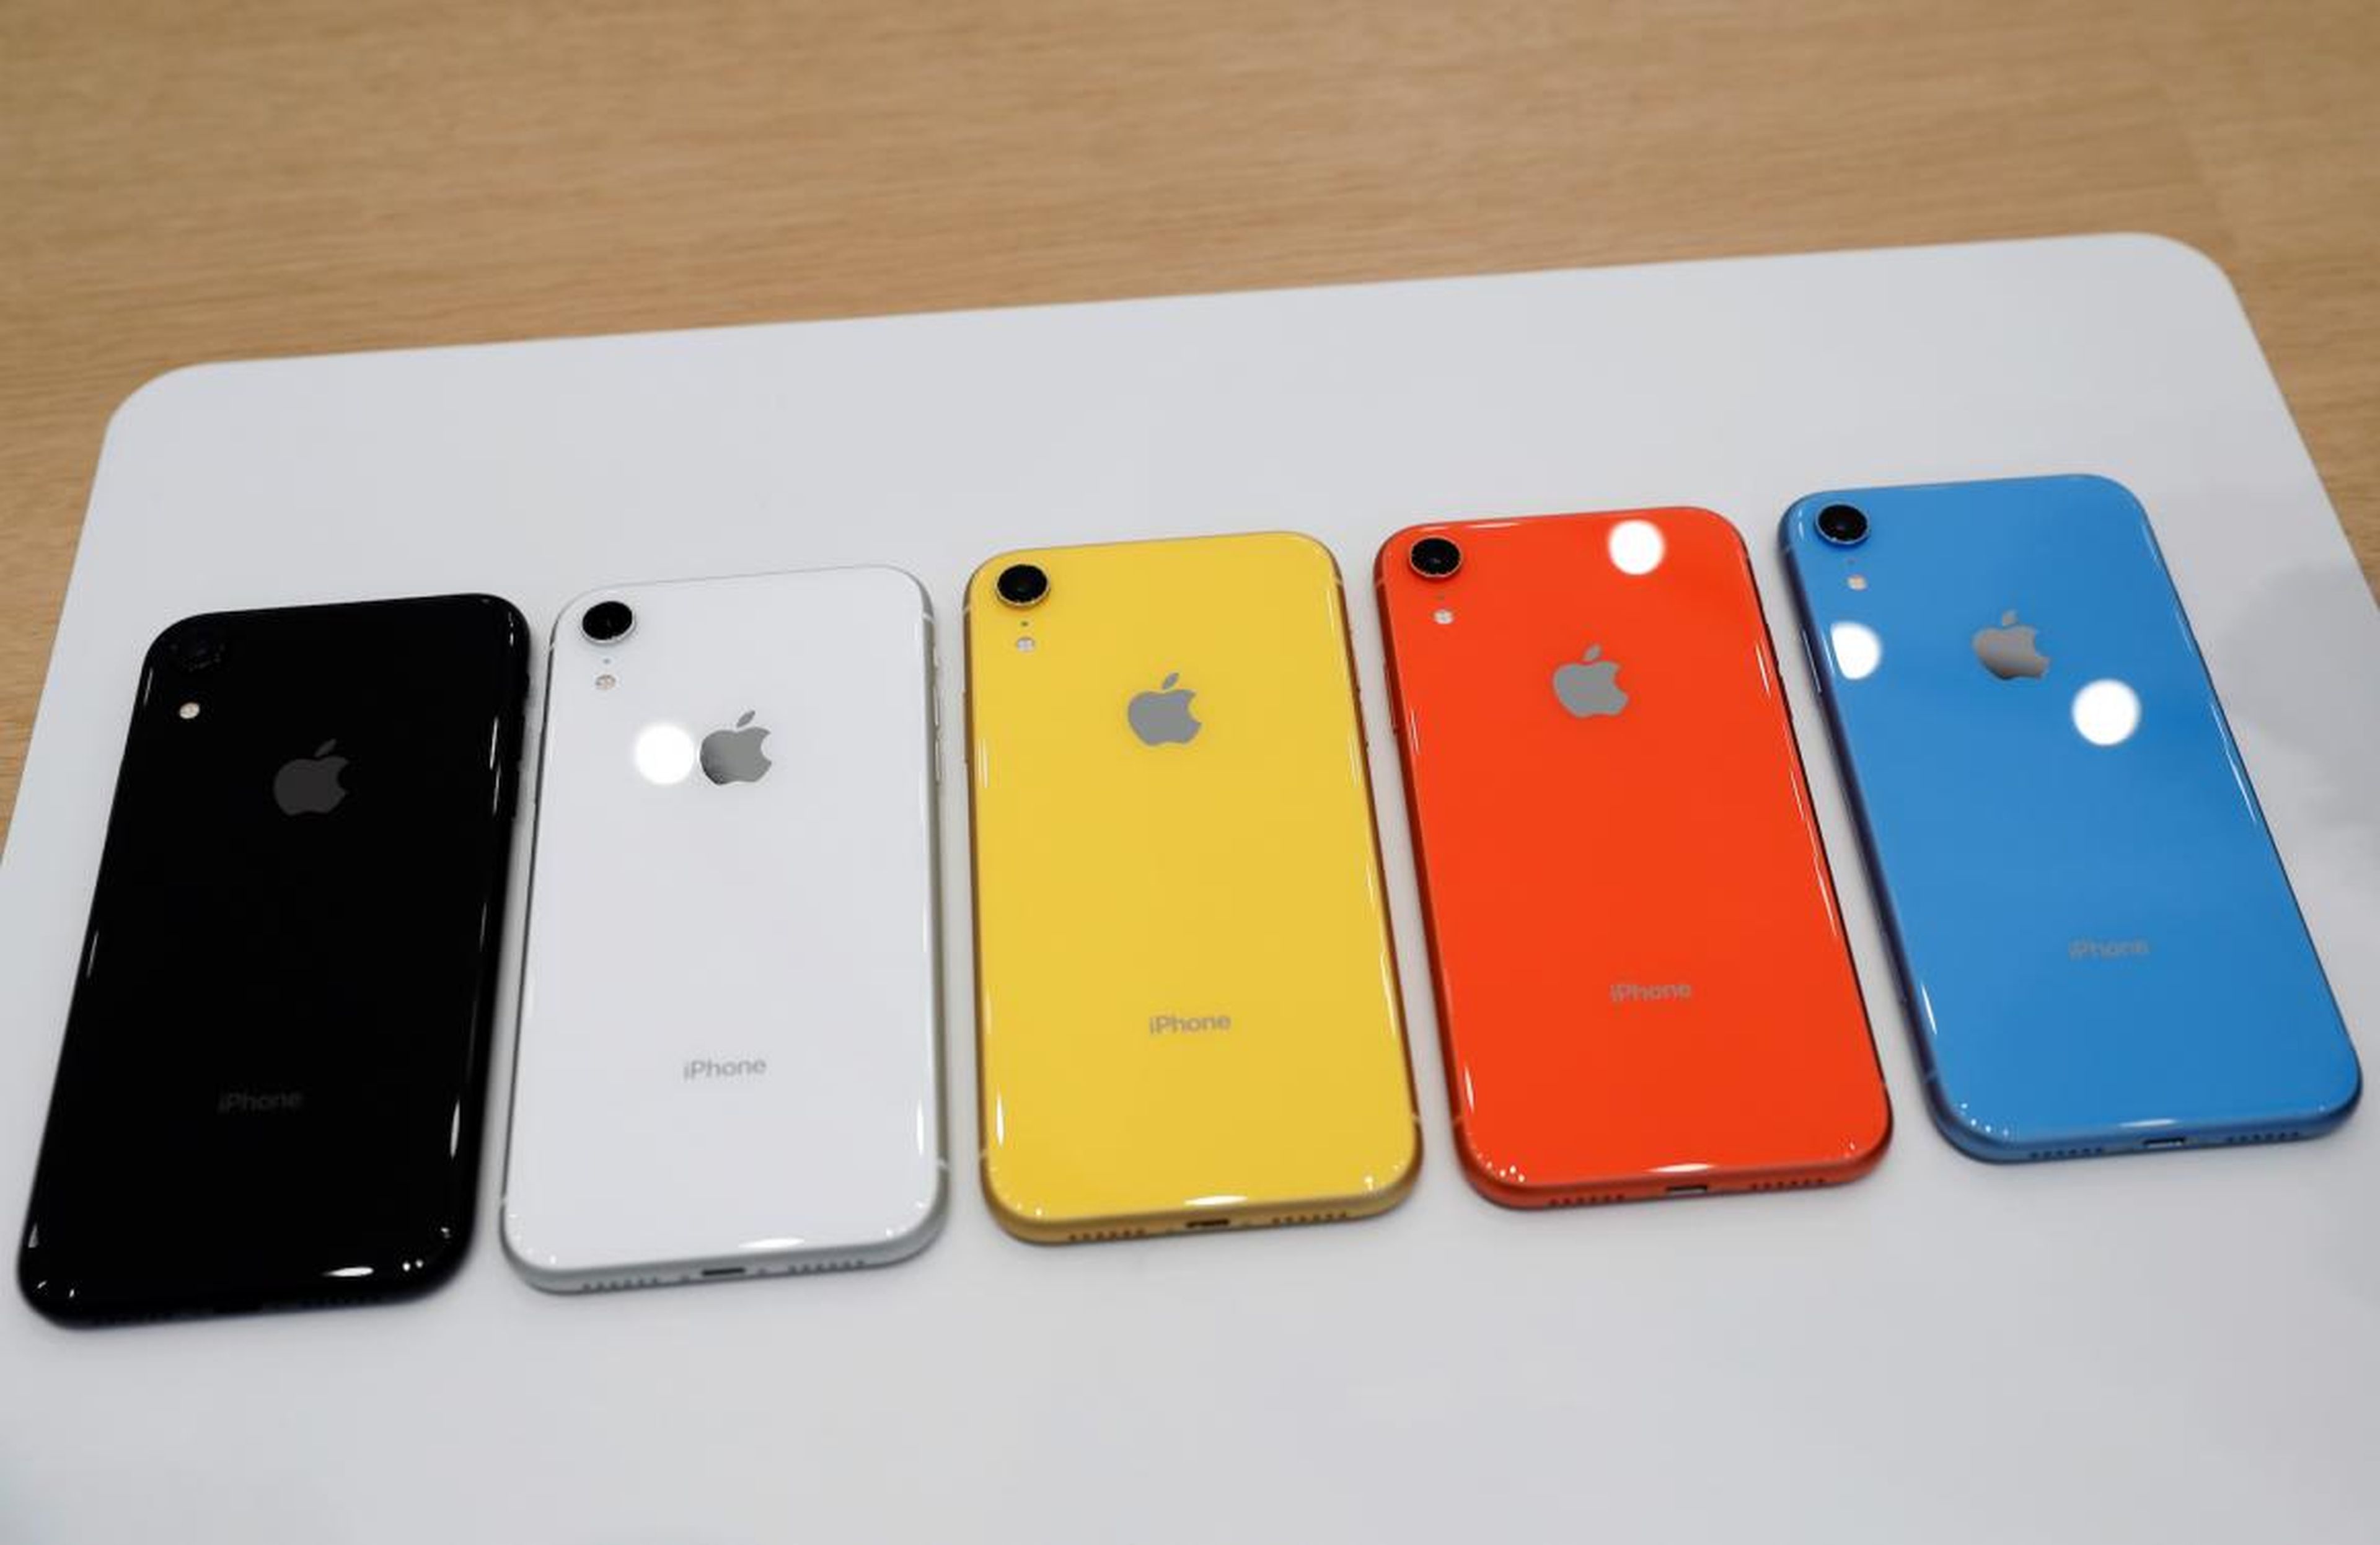 Los iPhone XR están disponibles en diferentes colores.